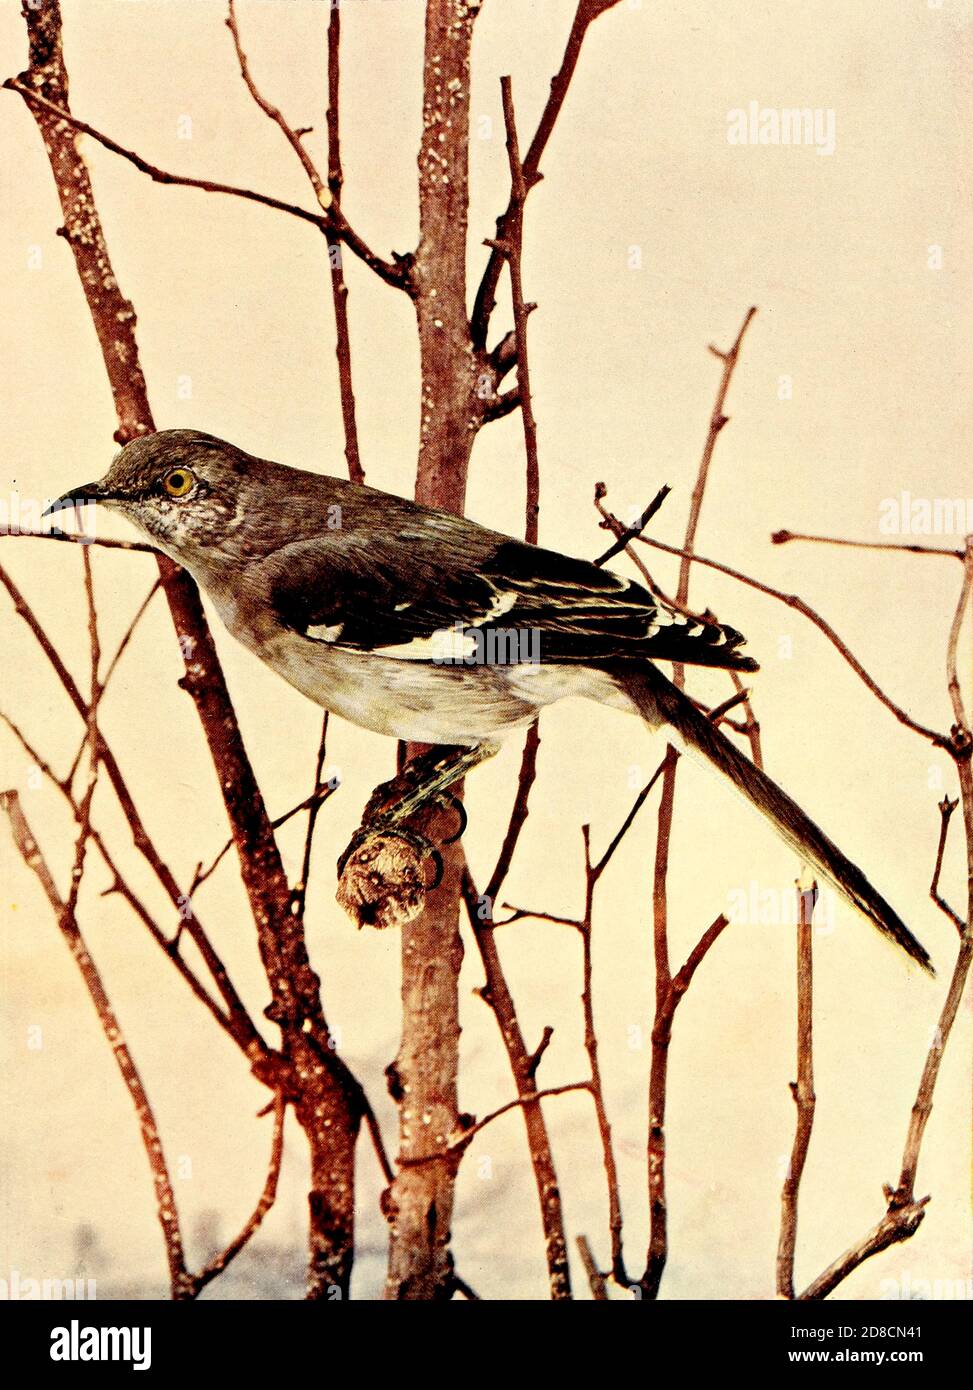 Der nördliche Mockingbird (Mimus polyglottos) ist der einzige Mockingbird, der häufig in Nordamerika gefunden wird. Dieser Vogel ist vor allem ein ständiger Bewohner, aber Nordvögel können nach Süden bei rauem Wetter bewegen. From Birds : illustriert durch Farbfotografie : eine monatliche Serie. Kenntnisse über Bird-Life Vol. 1 Nr. 1 Juni 1897 Stockfoto